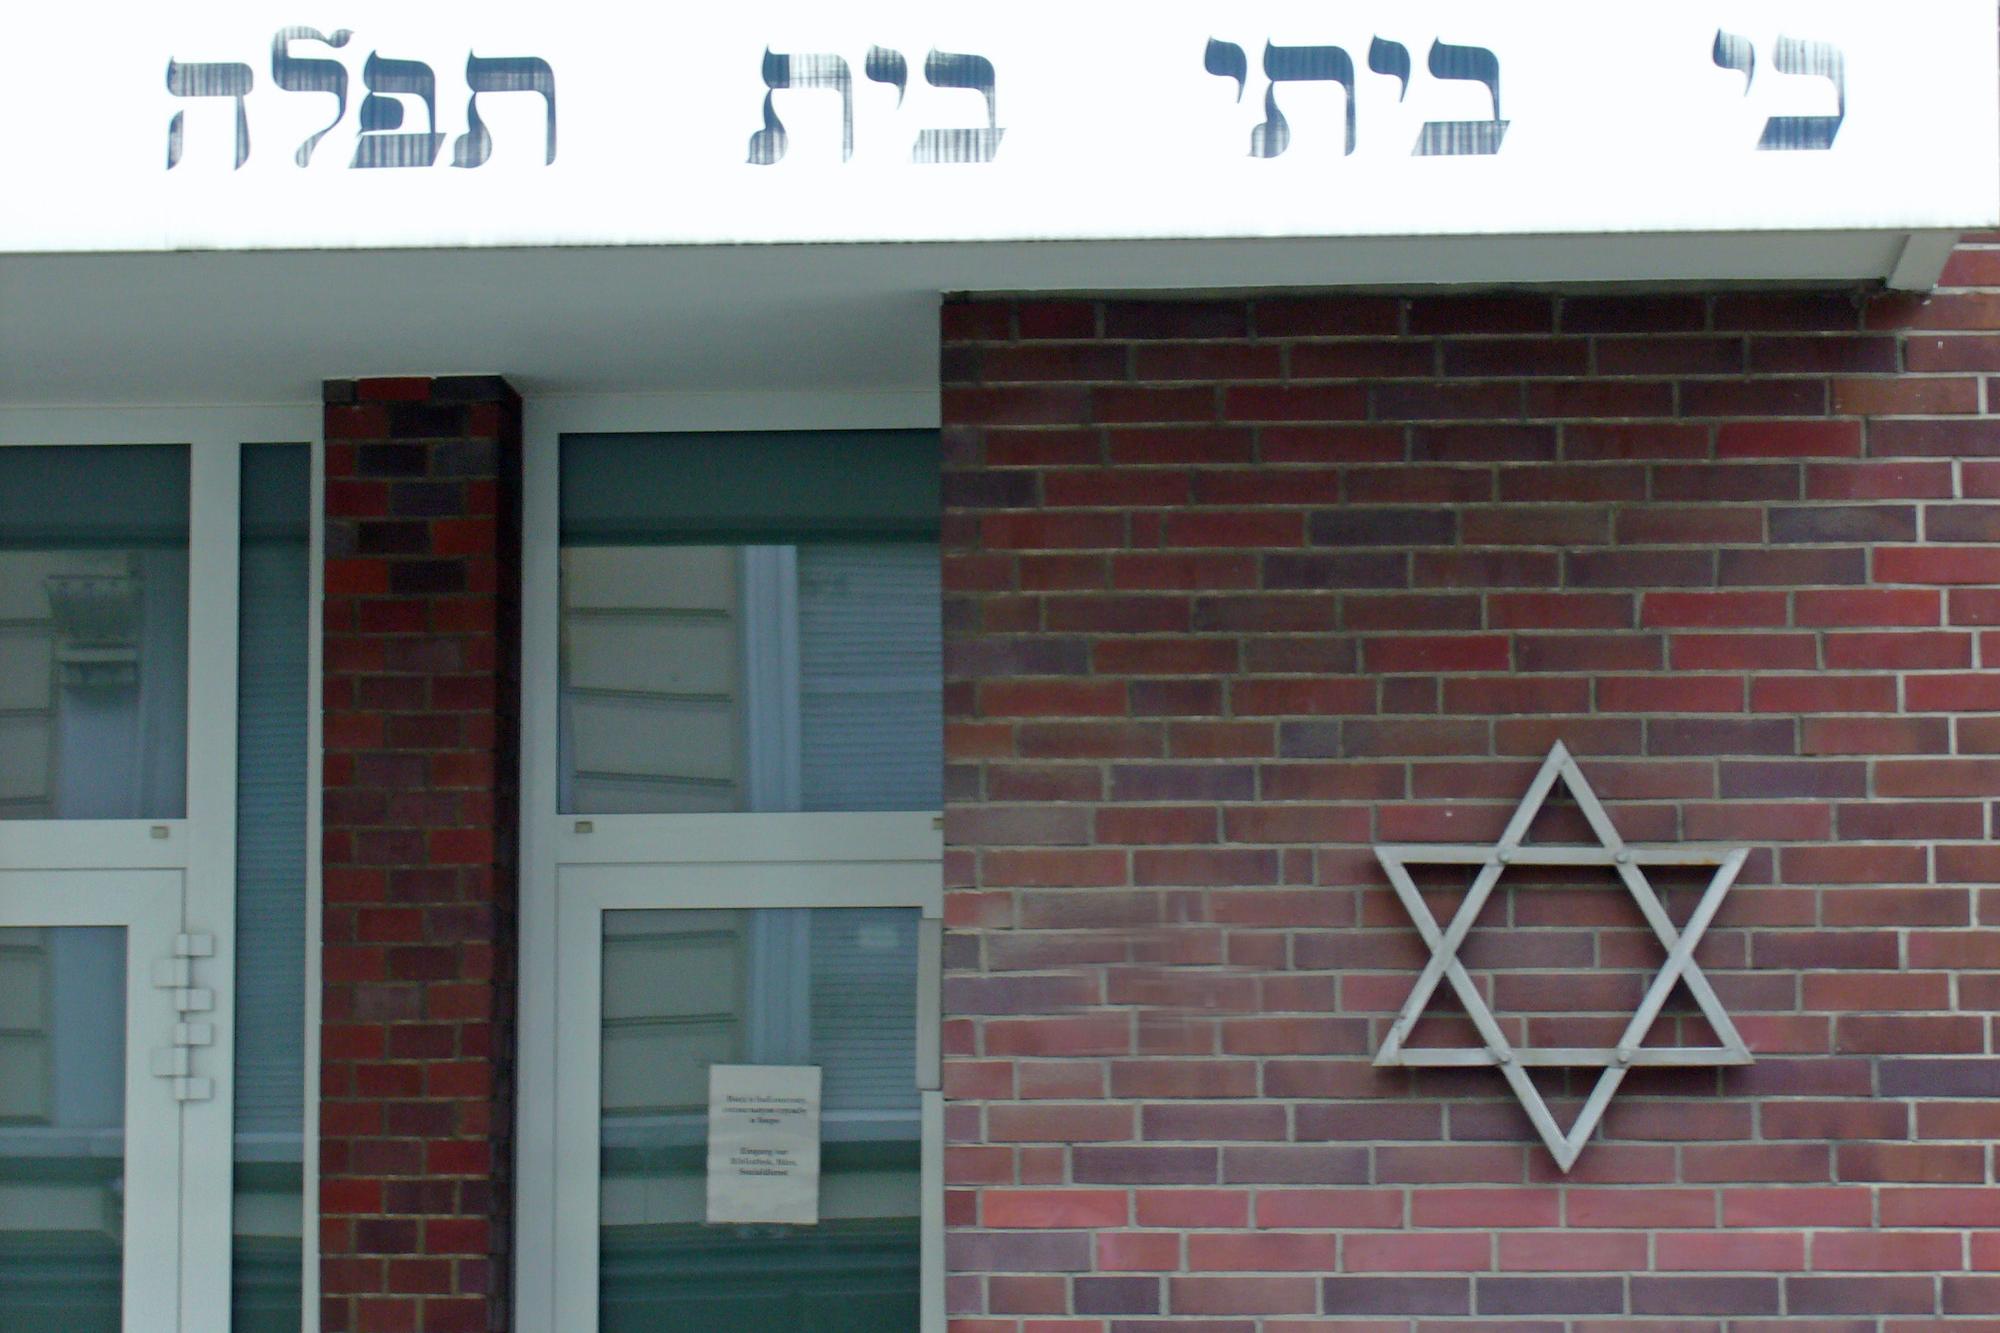 Der Davidstern an der Fassade der Synagoge in Mönchengladbach.